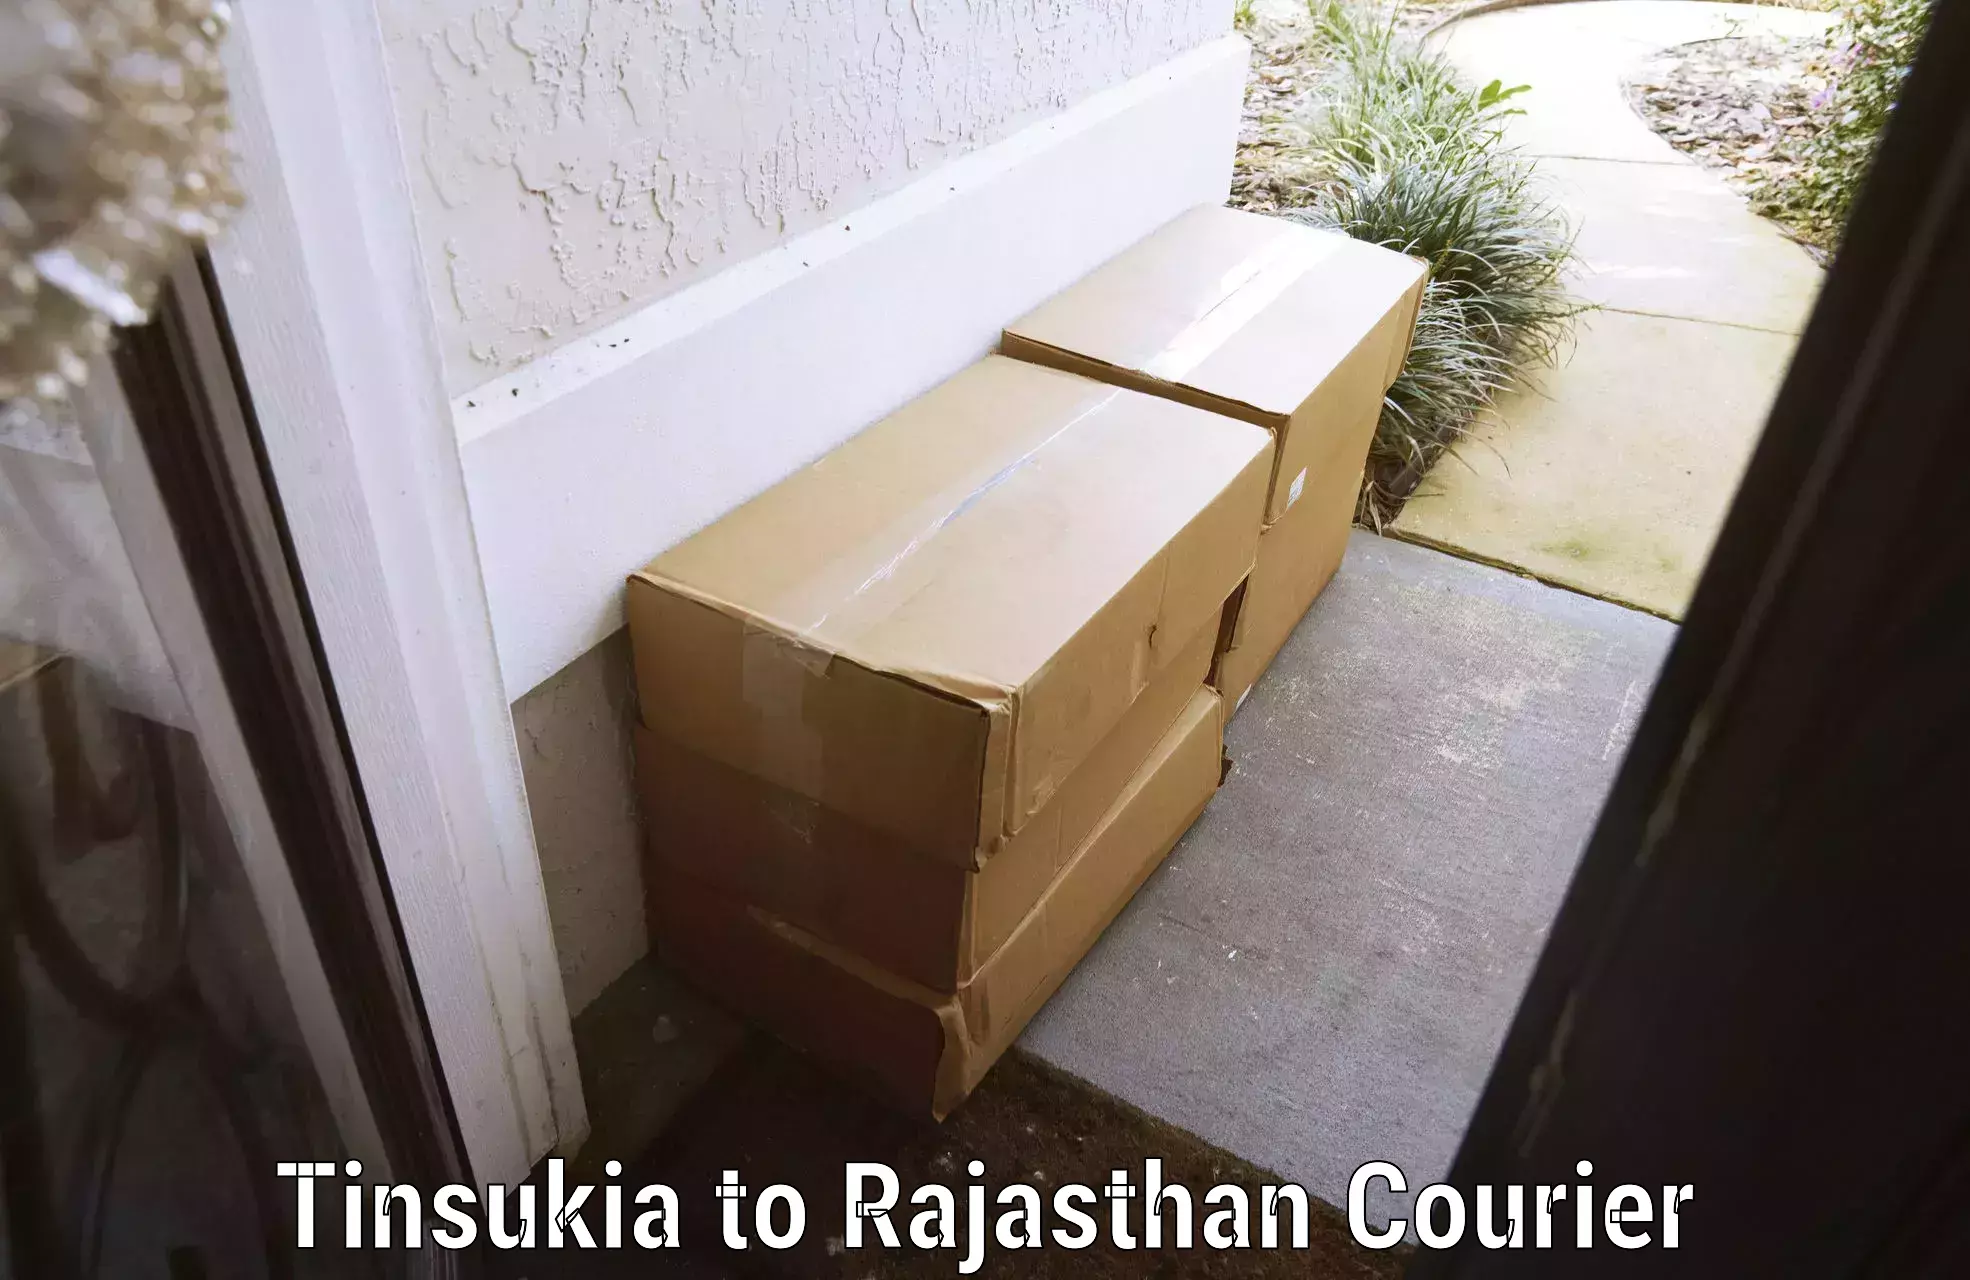 Luggage delivery news Tinsukia to Nokha